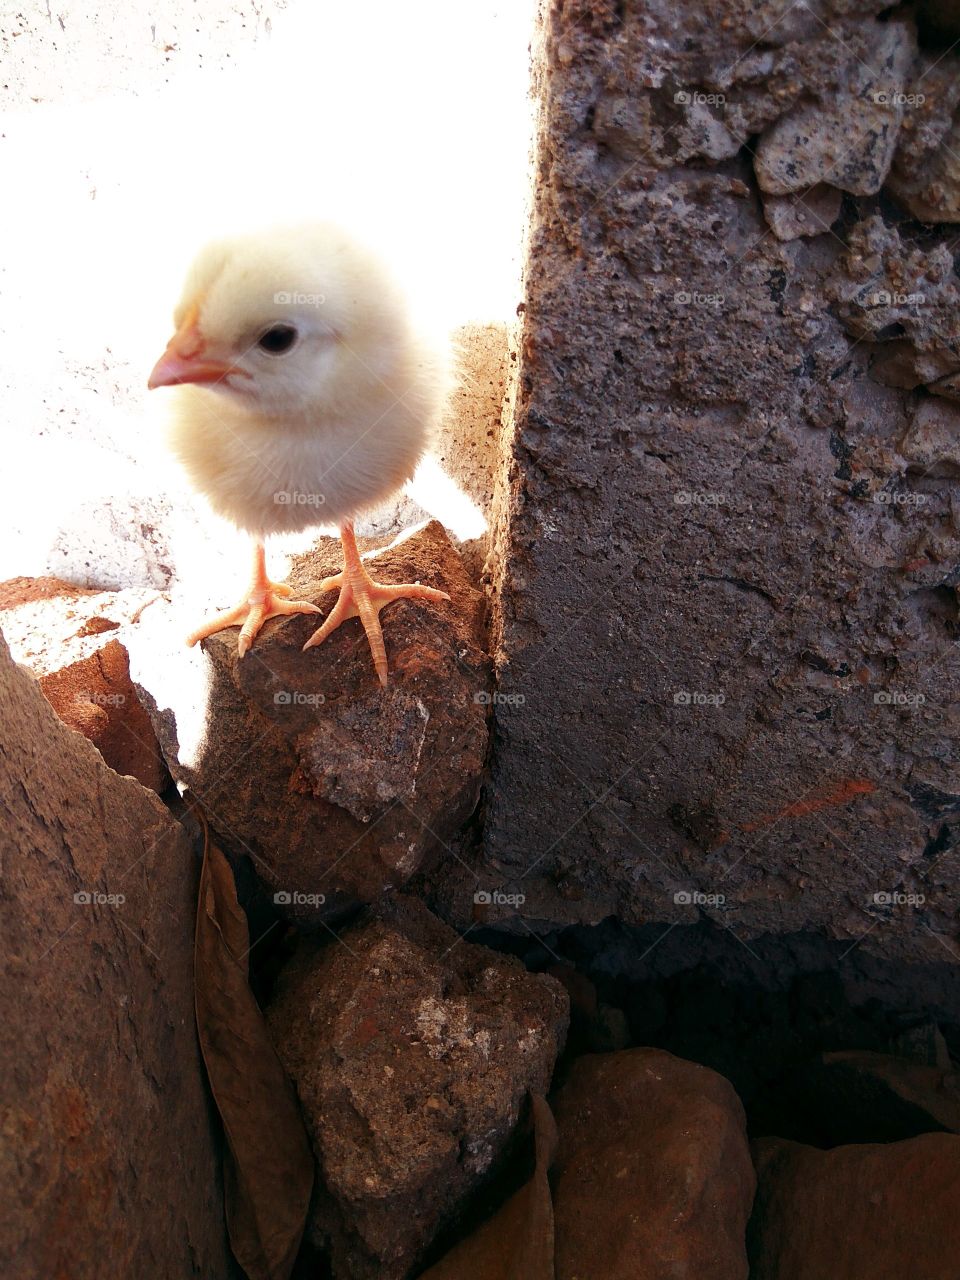 Cute Baby chicks